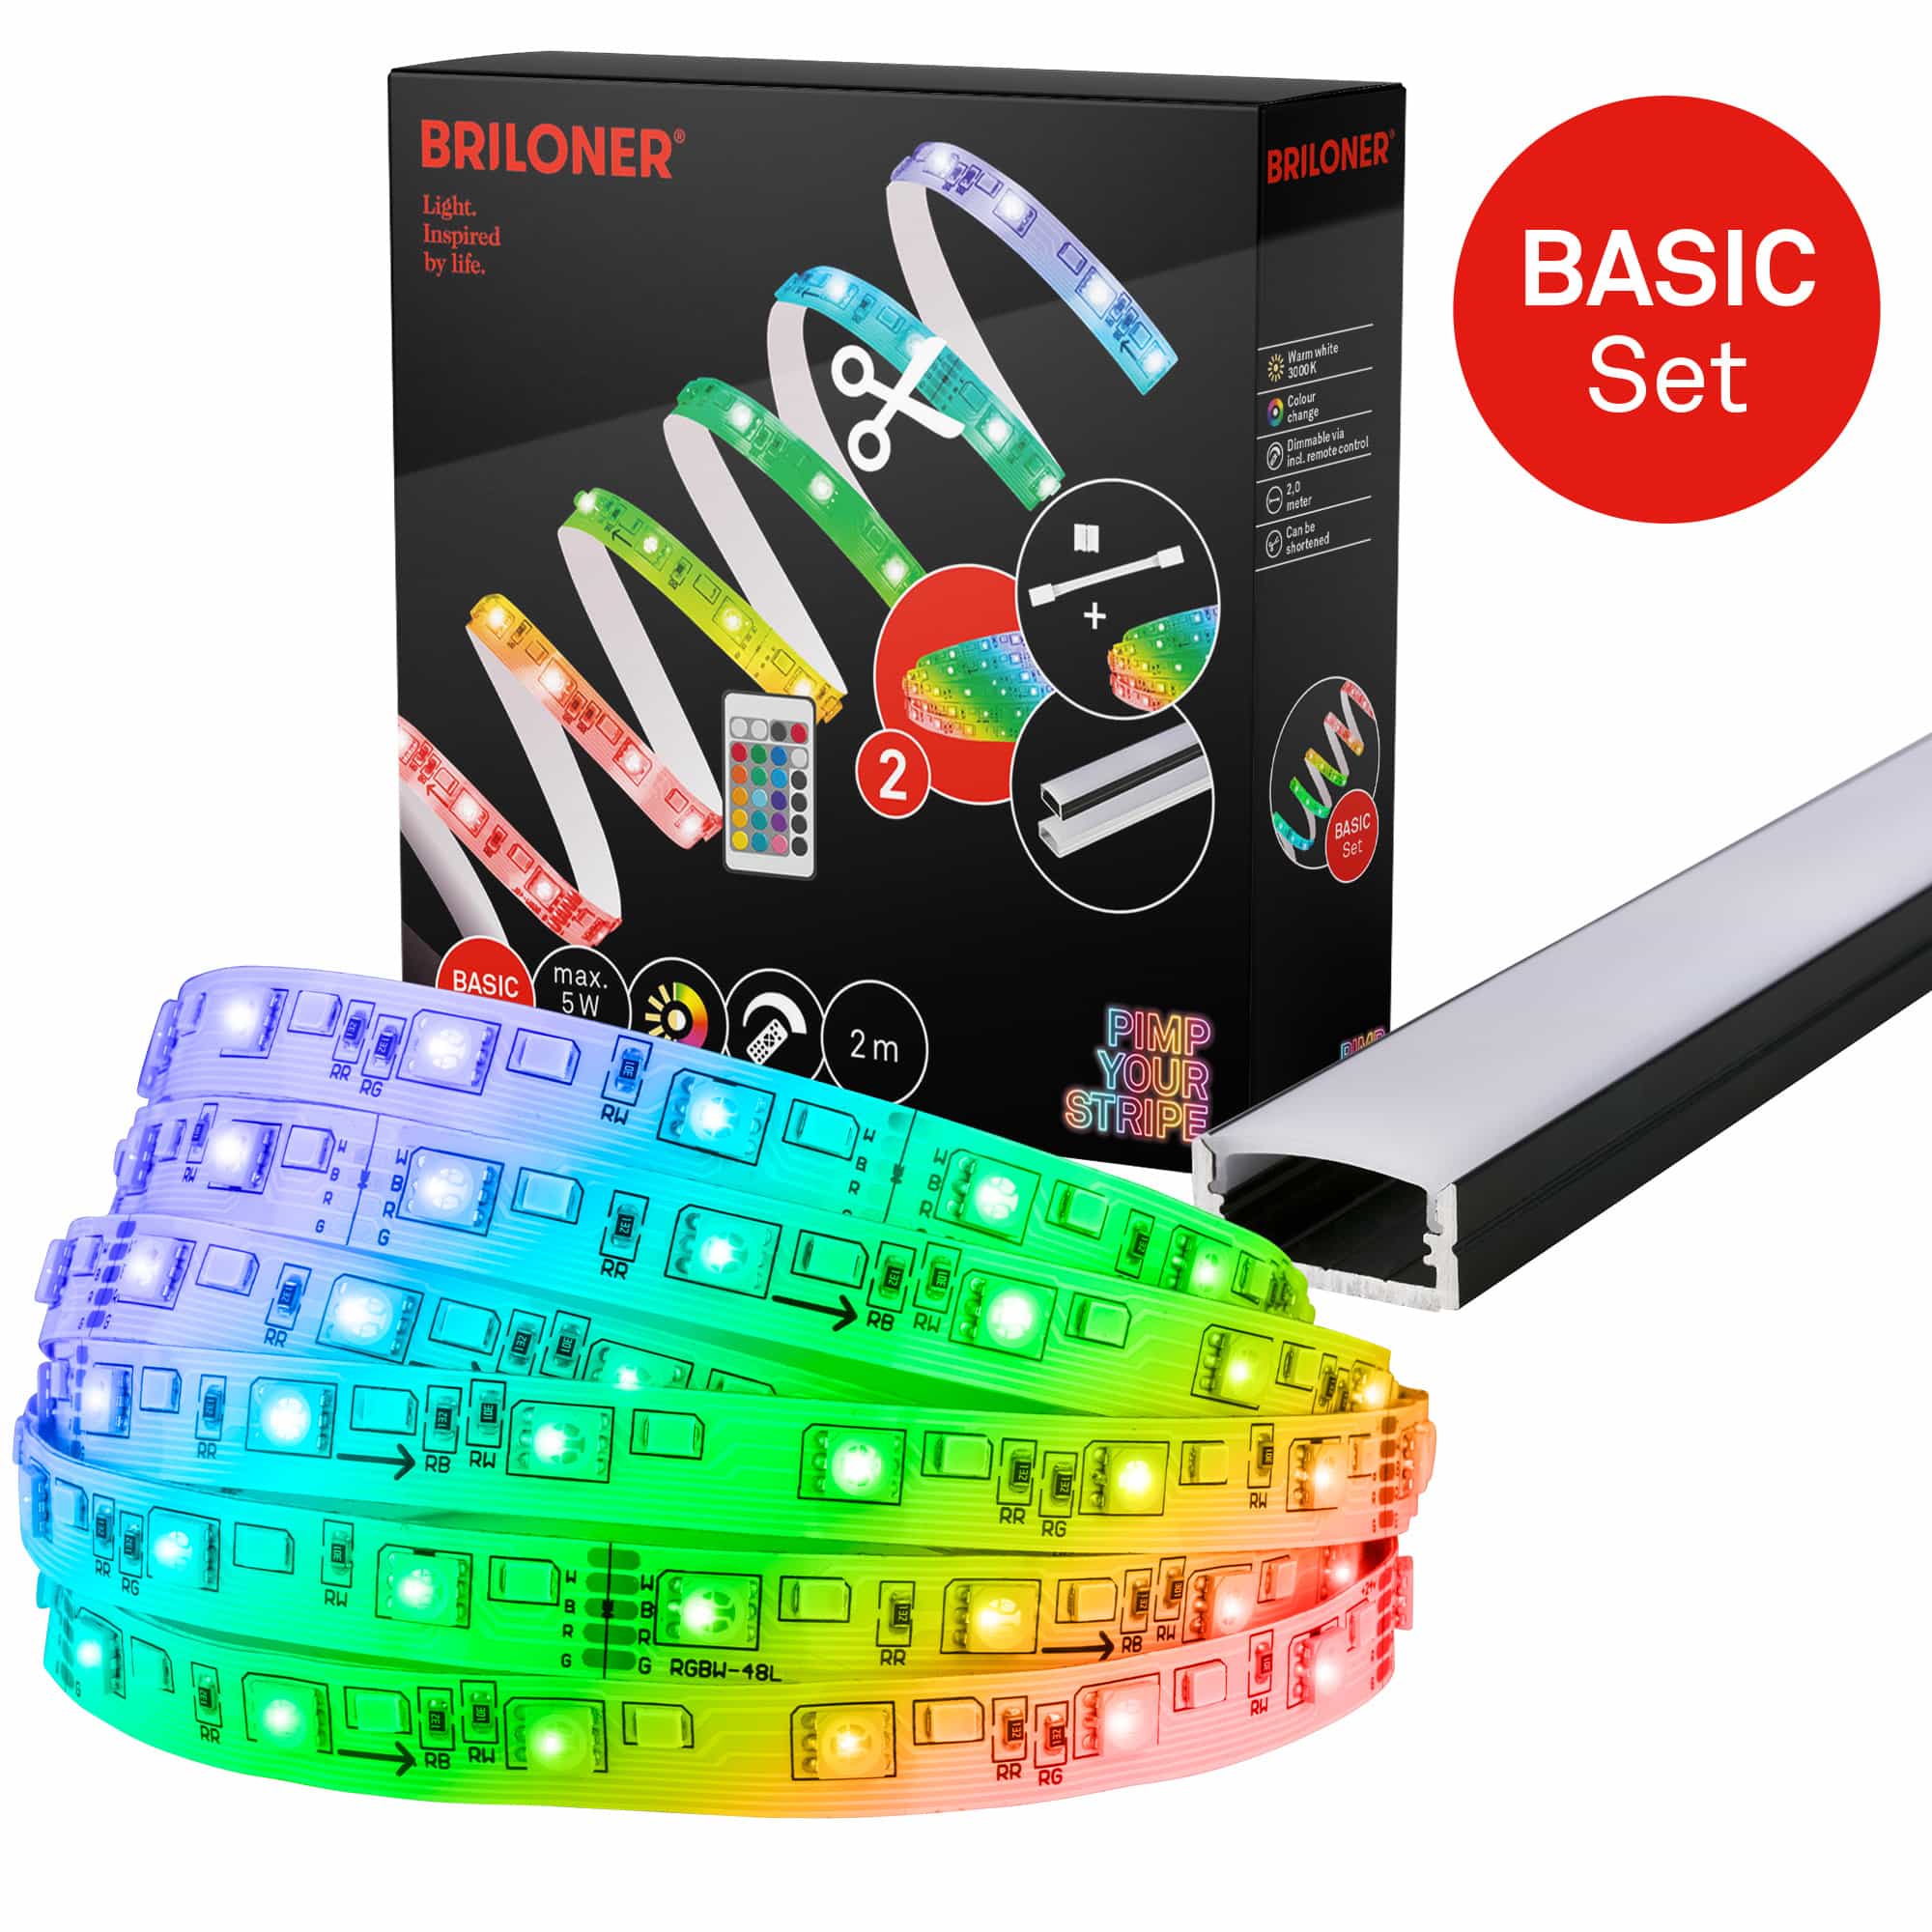 Pimp Your Stripe Starterset LED Strip 2m, RGB+W, Fernbedienung